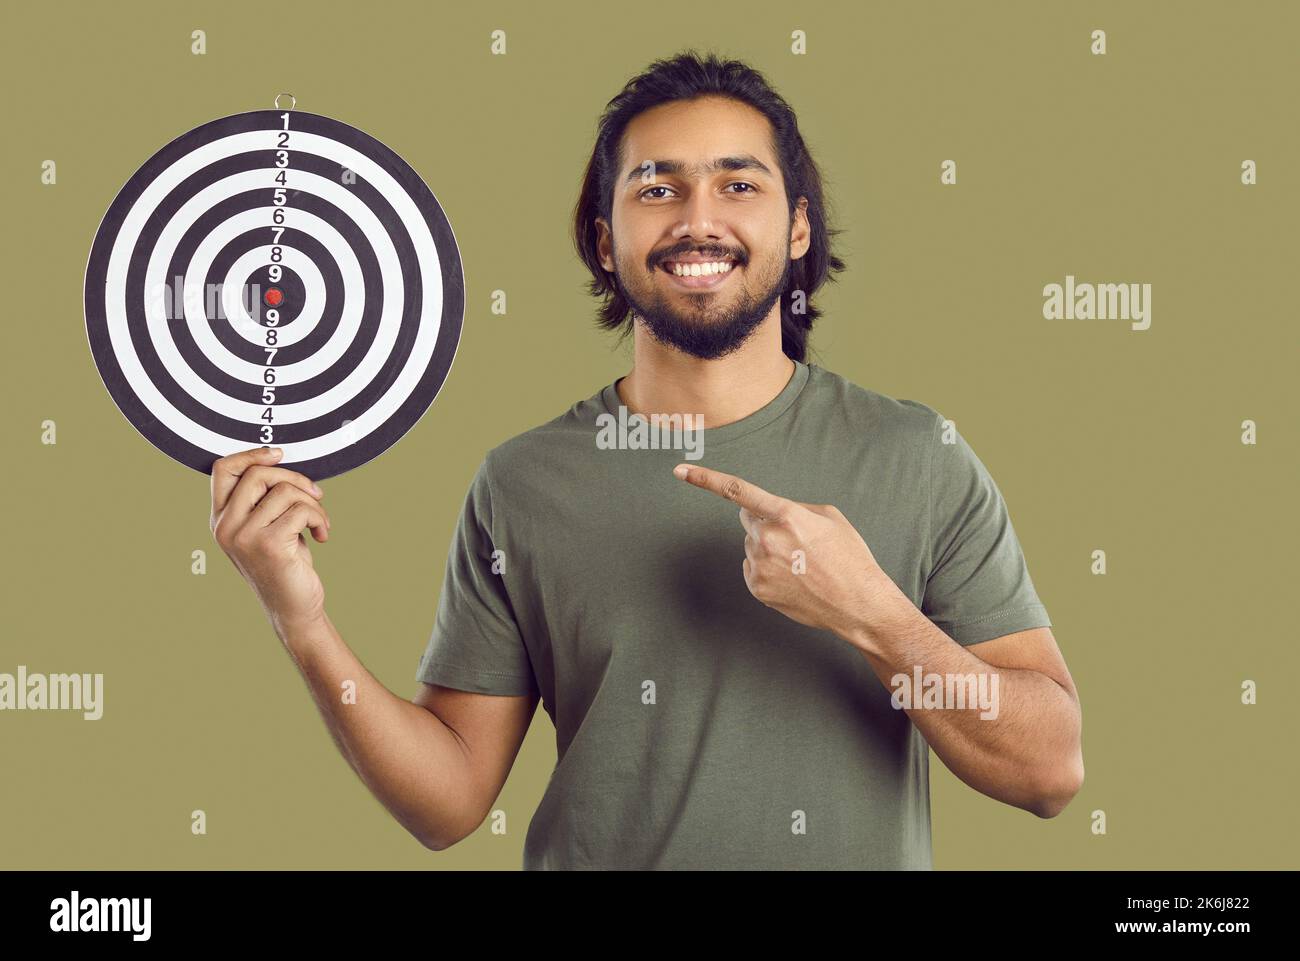 Glücklicher Inder, der sich das Ziel gesetzt hat, mit dem schießigen Ziel und dem Zeigefinger auf das Bullseye zeigt Stockfoto